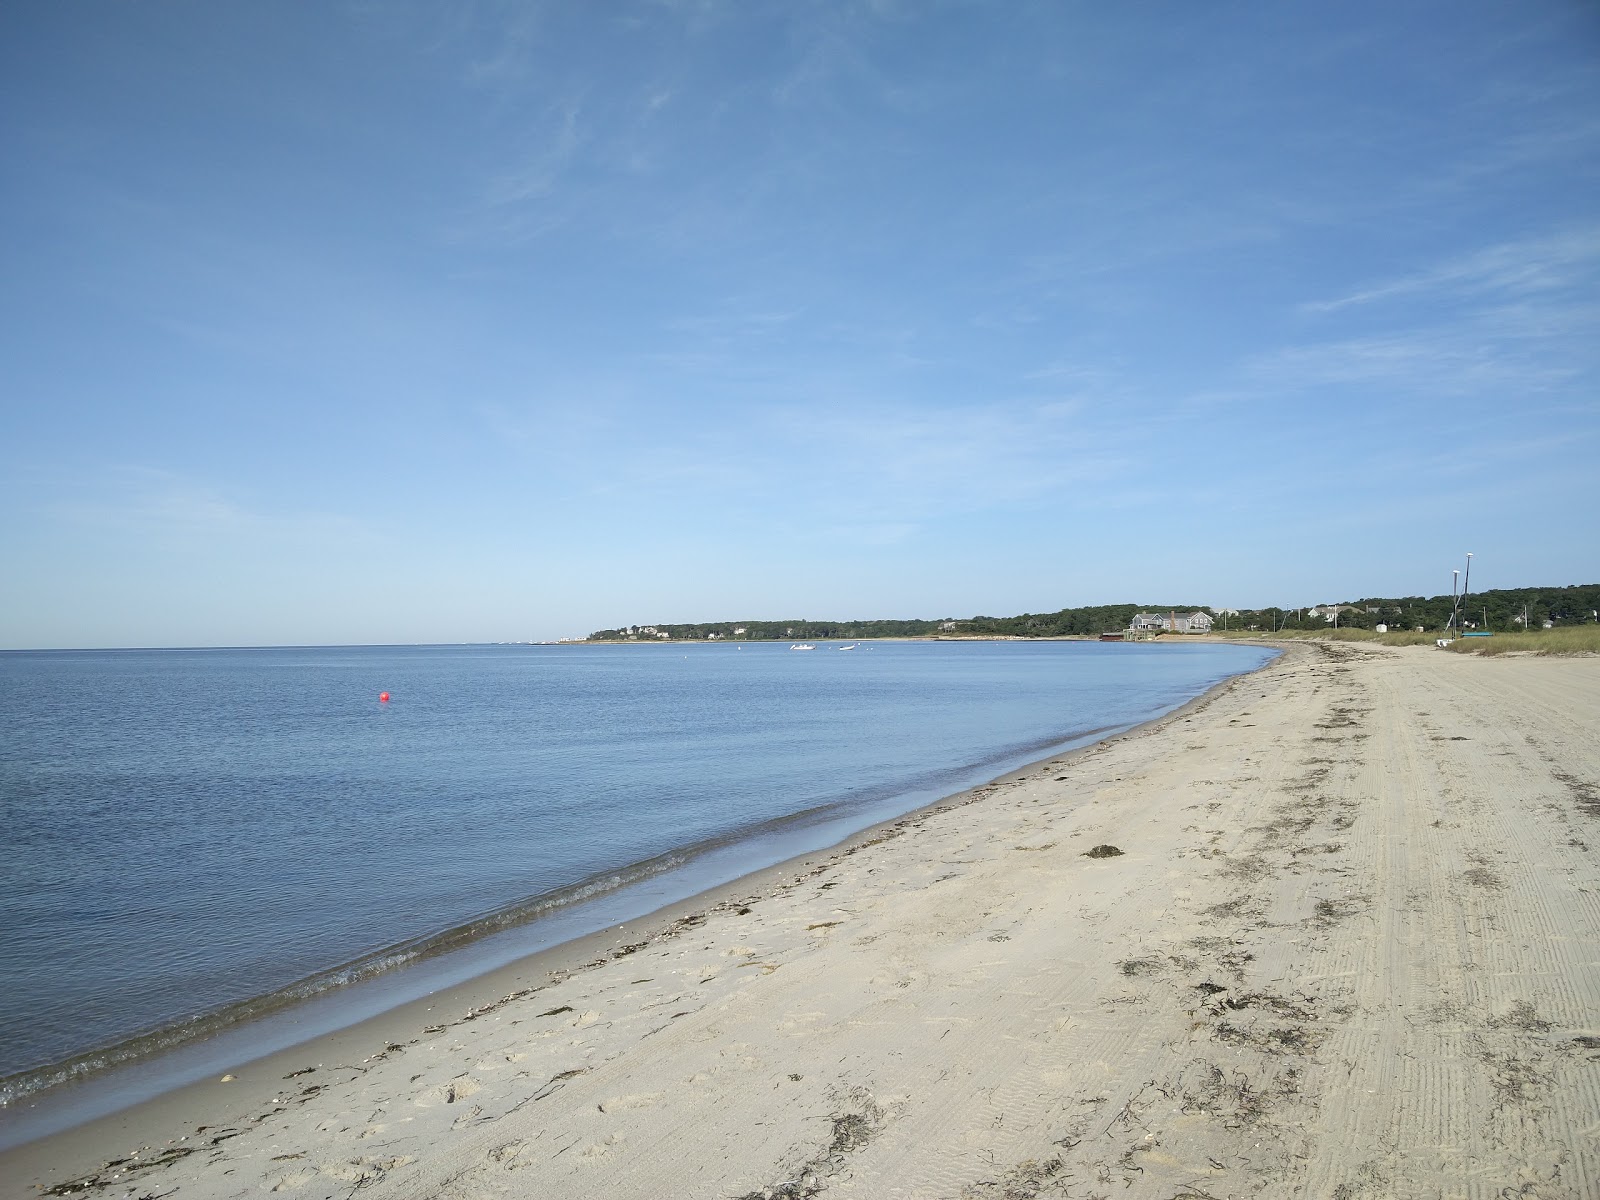 Ridgevale beach'in fotoğrafı geniş plaj ile birlikte